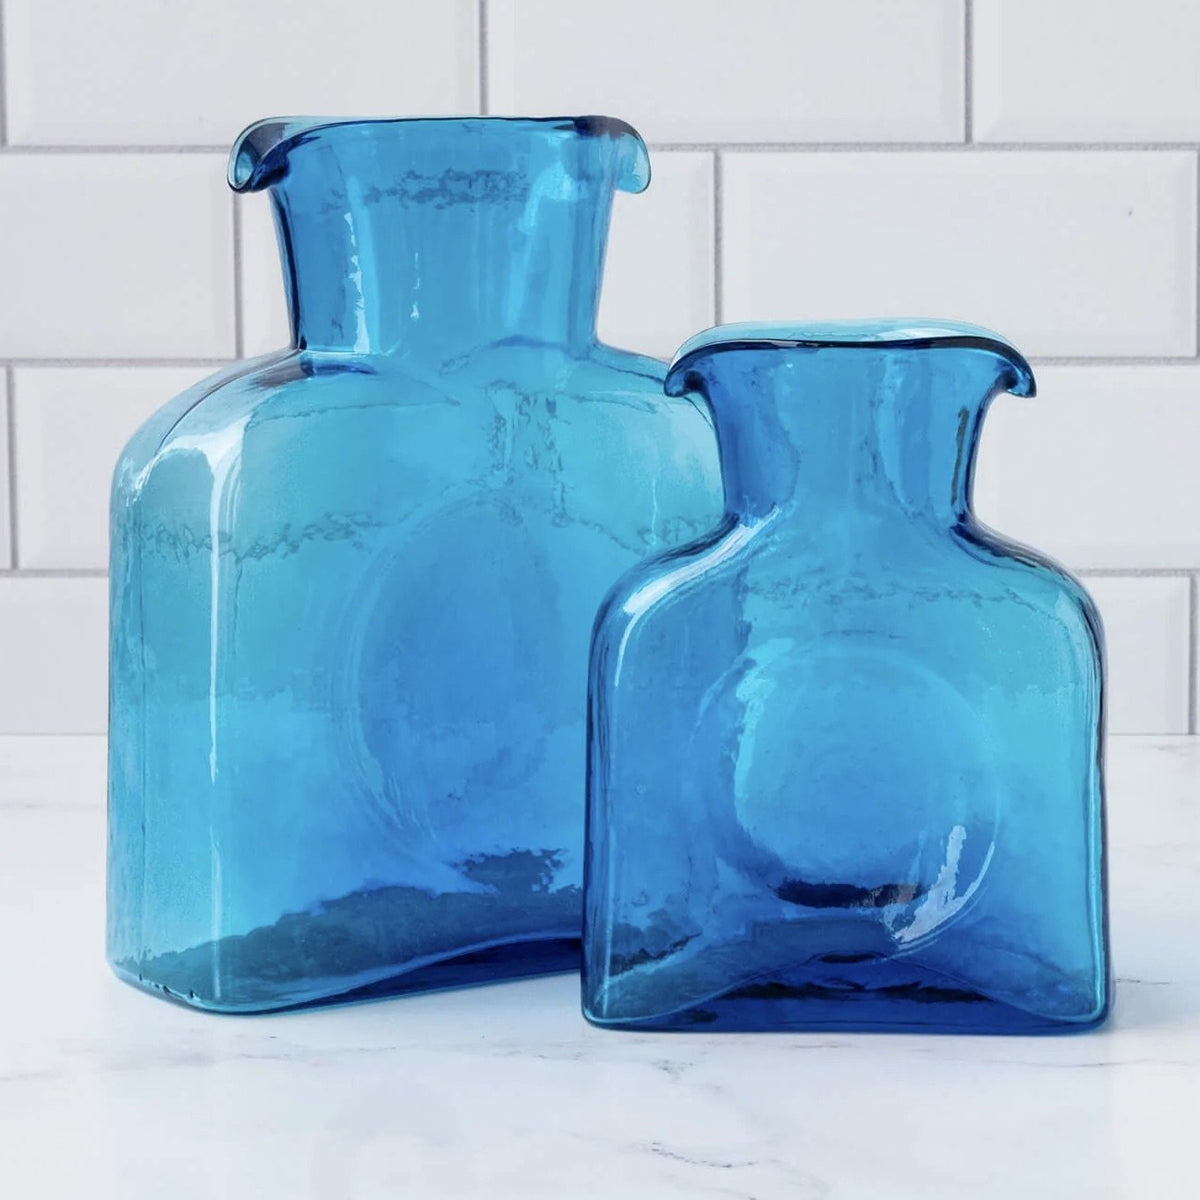 https://shops.mountvernon.org/cdn/shop/products/turquoise-water-bottle-blenko-water-bottle-455192_1200x1200.jpg?v=1696615426